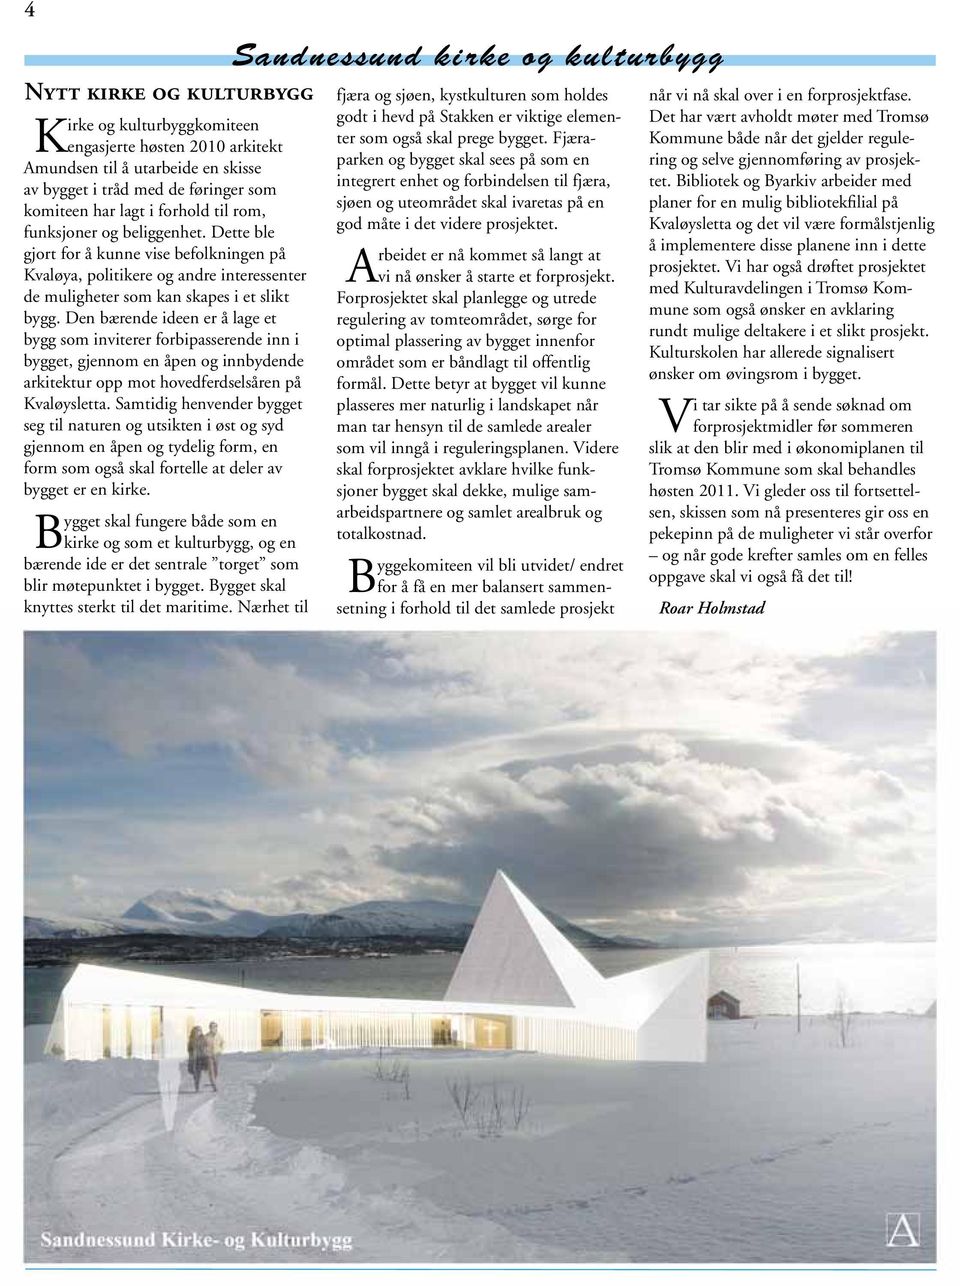 Den bærende ideen er å lage et bygg som inviterer forbipasserende inn i bygget, gjennom en åpen og innbydende arkitektur opp mot hovedferdselsåren på Kvaløysletta.